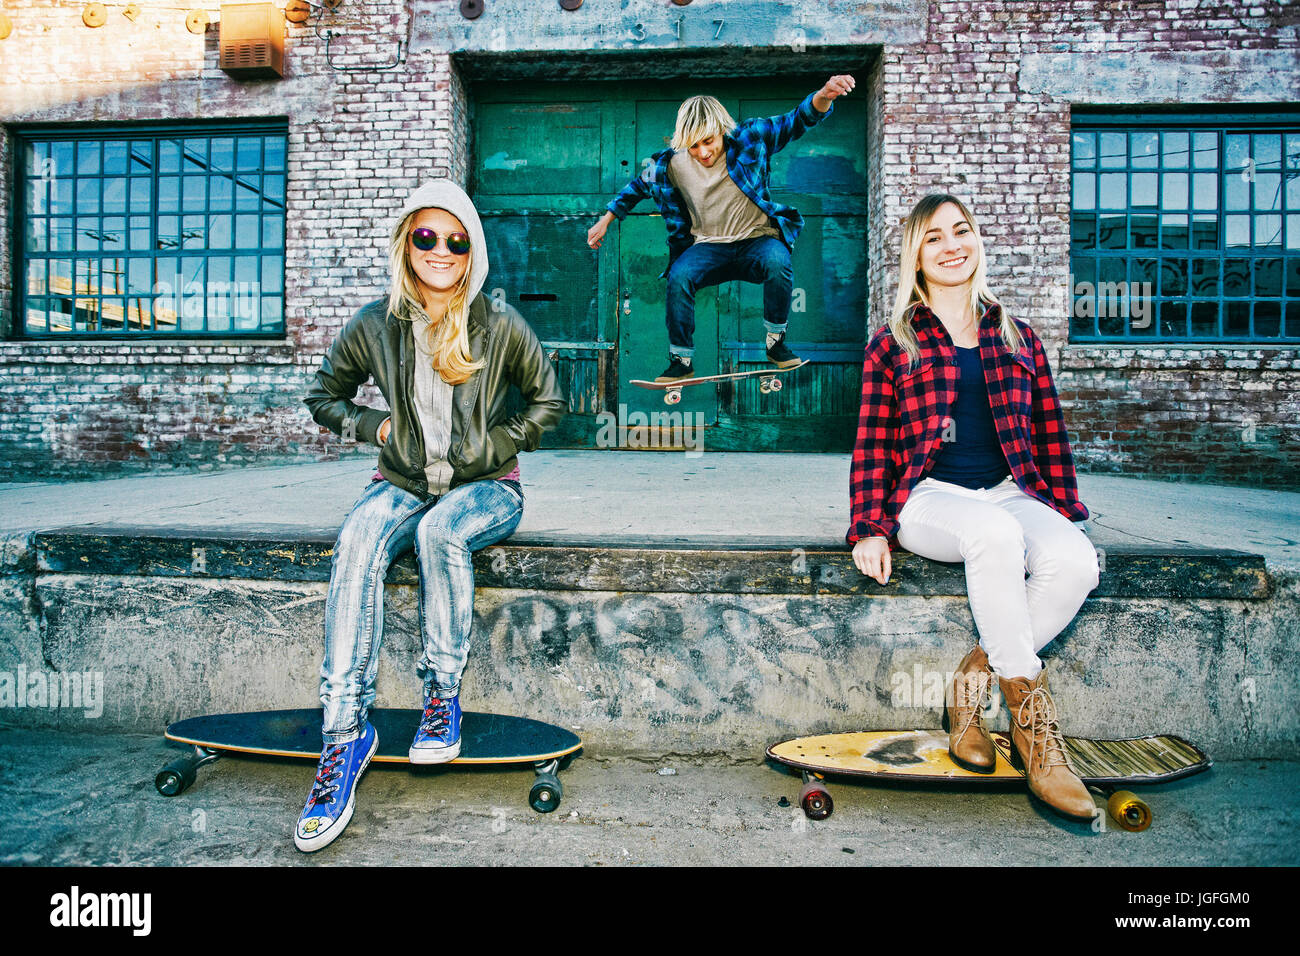 Freunde mit Skateboards lächelnd auf die Laderampe Stockfoto